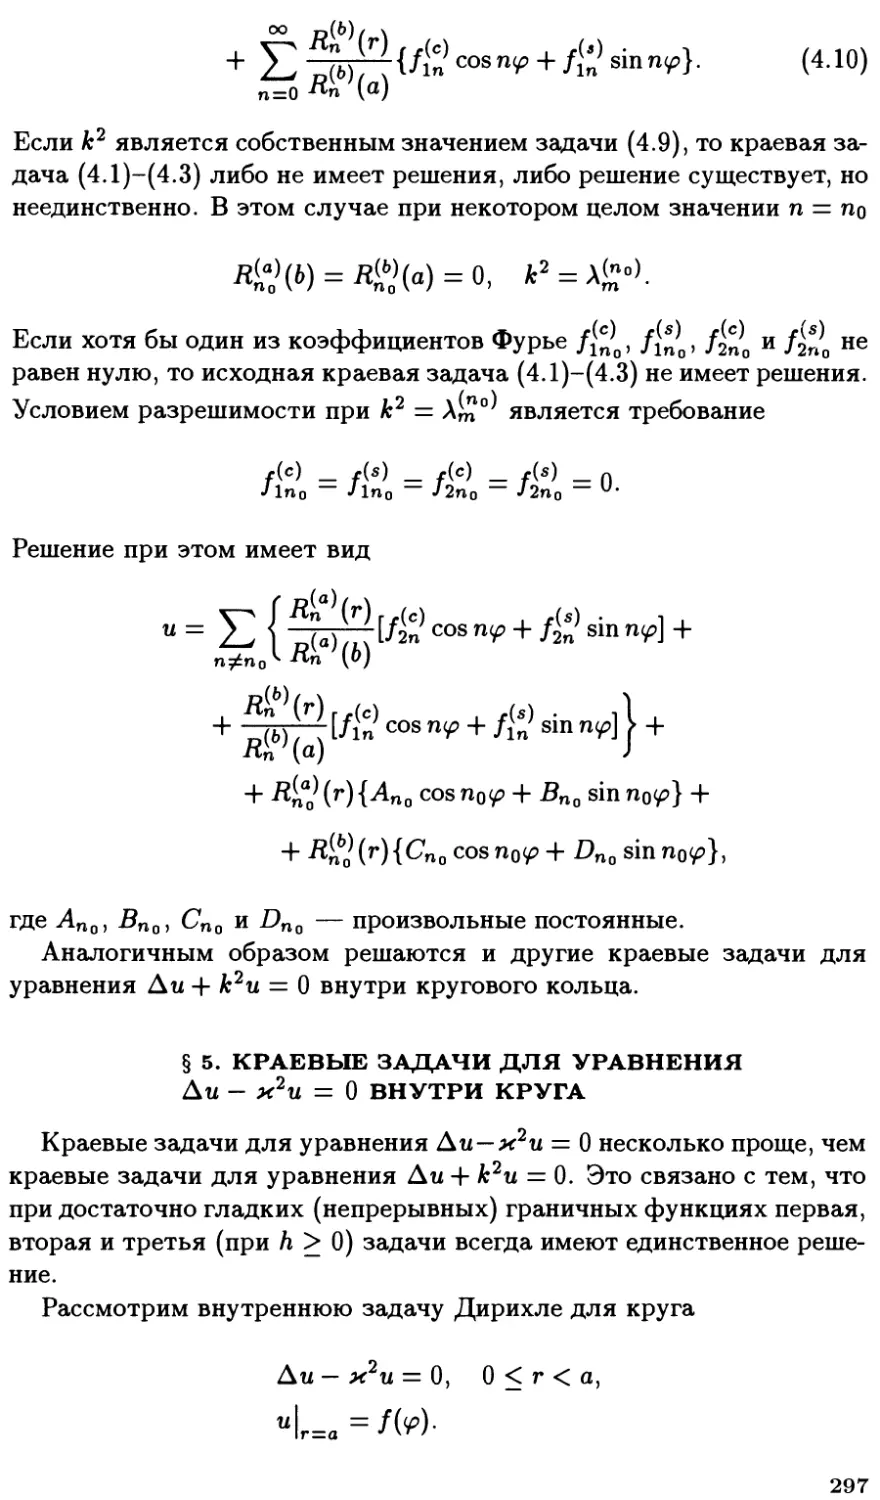 §5. Краевые задачи для уравнения $\Delta u - k^2 u = 0$ внутри круга